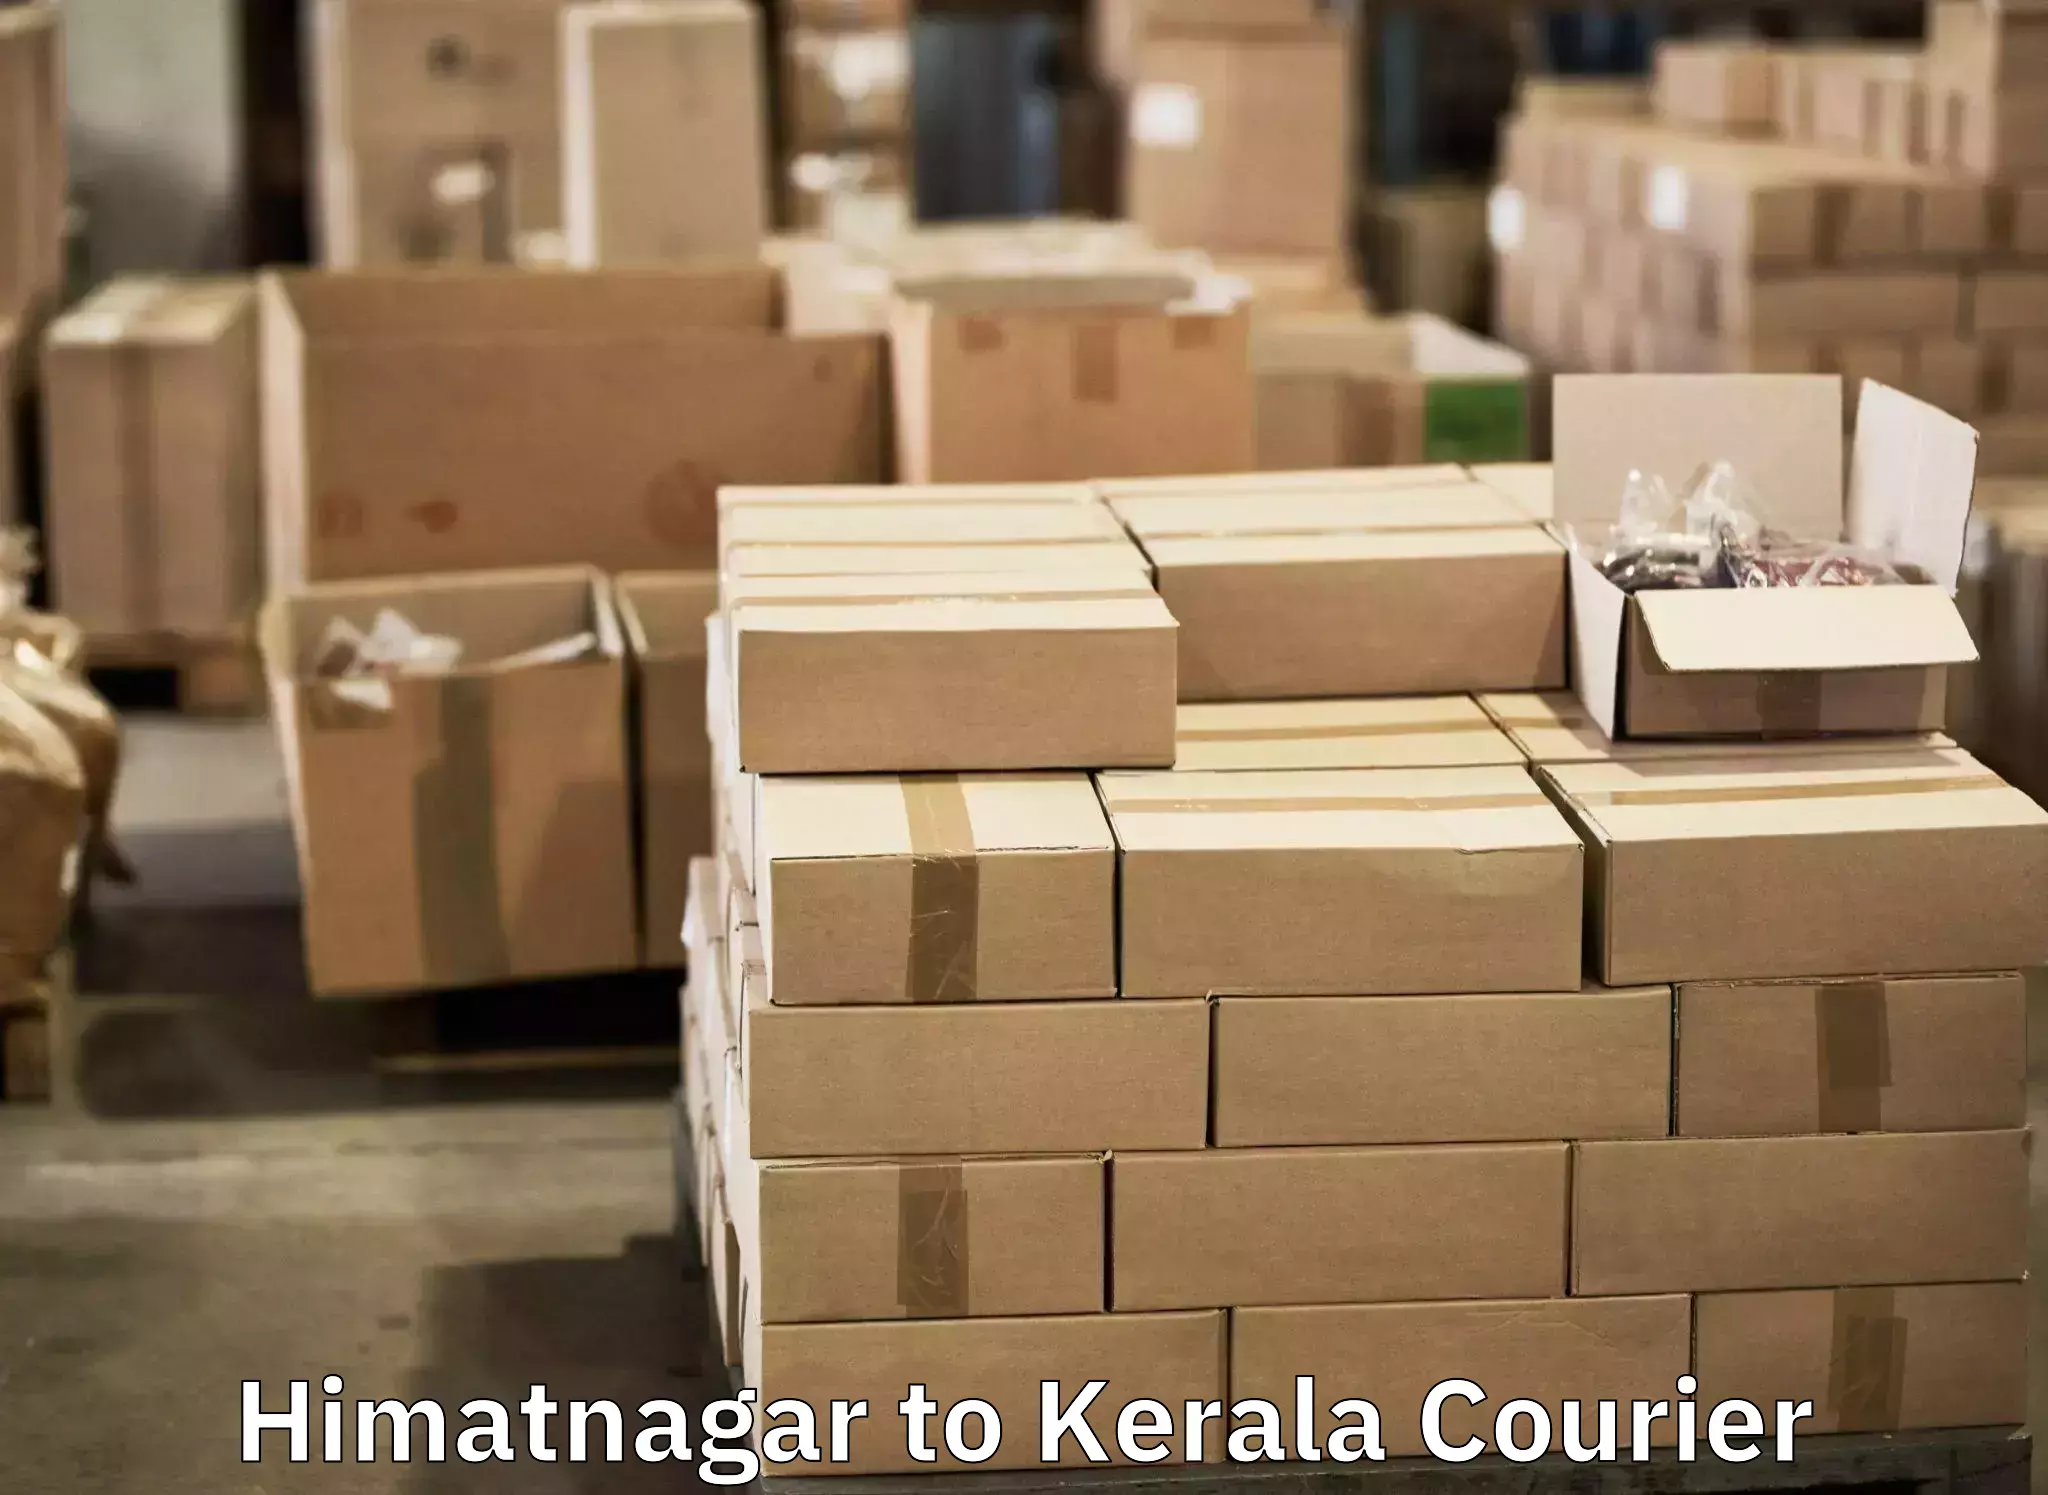 Baggage shipping service Himatnagar to Kottayam